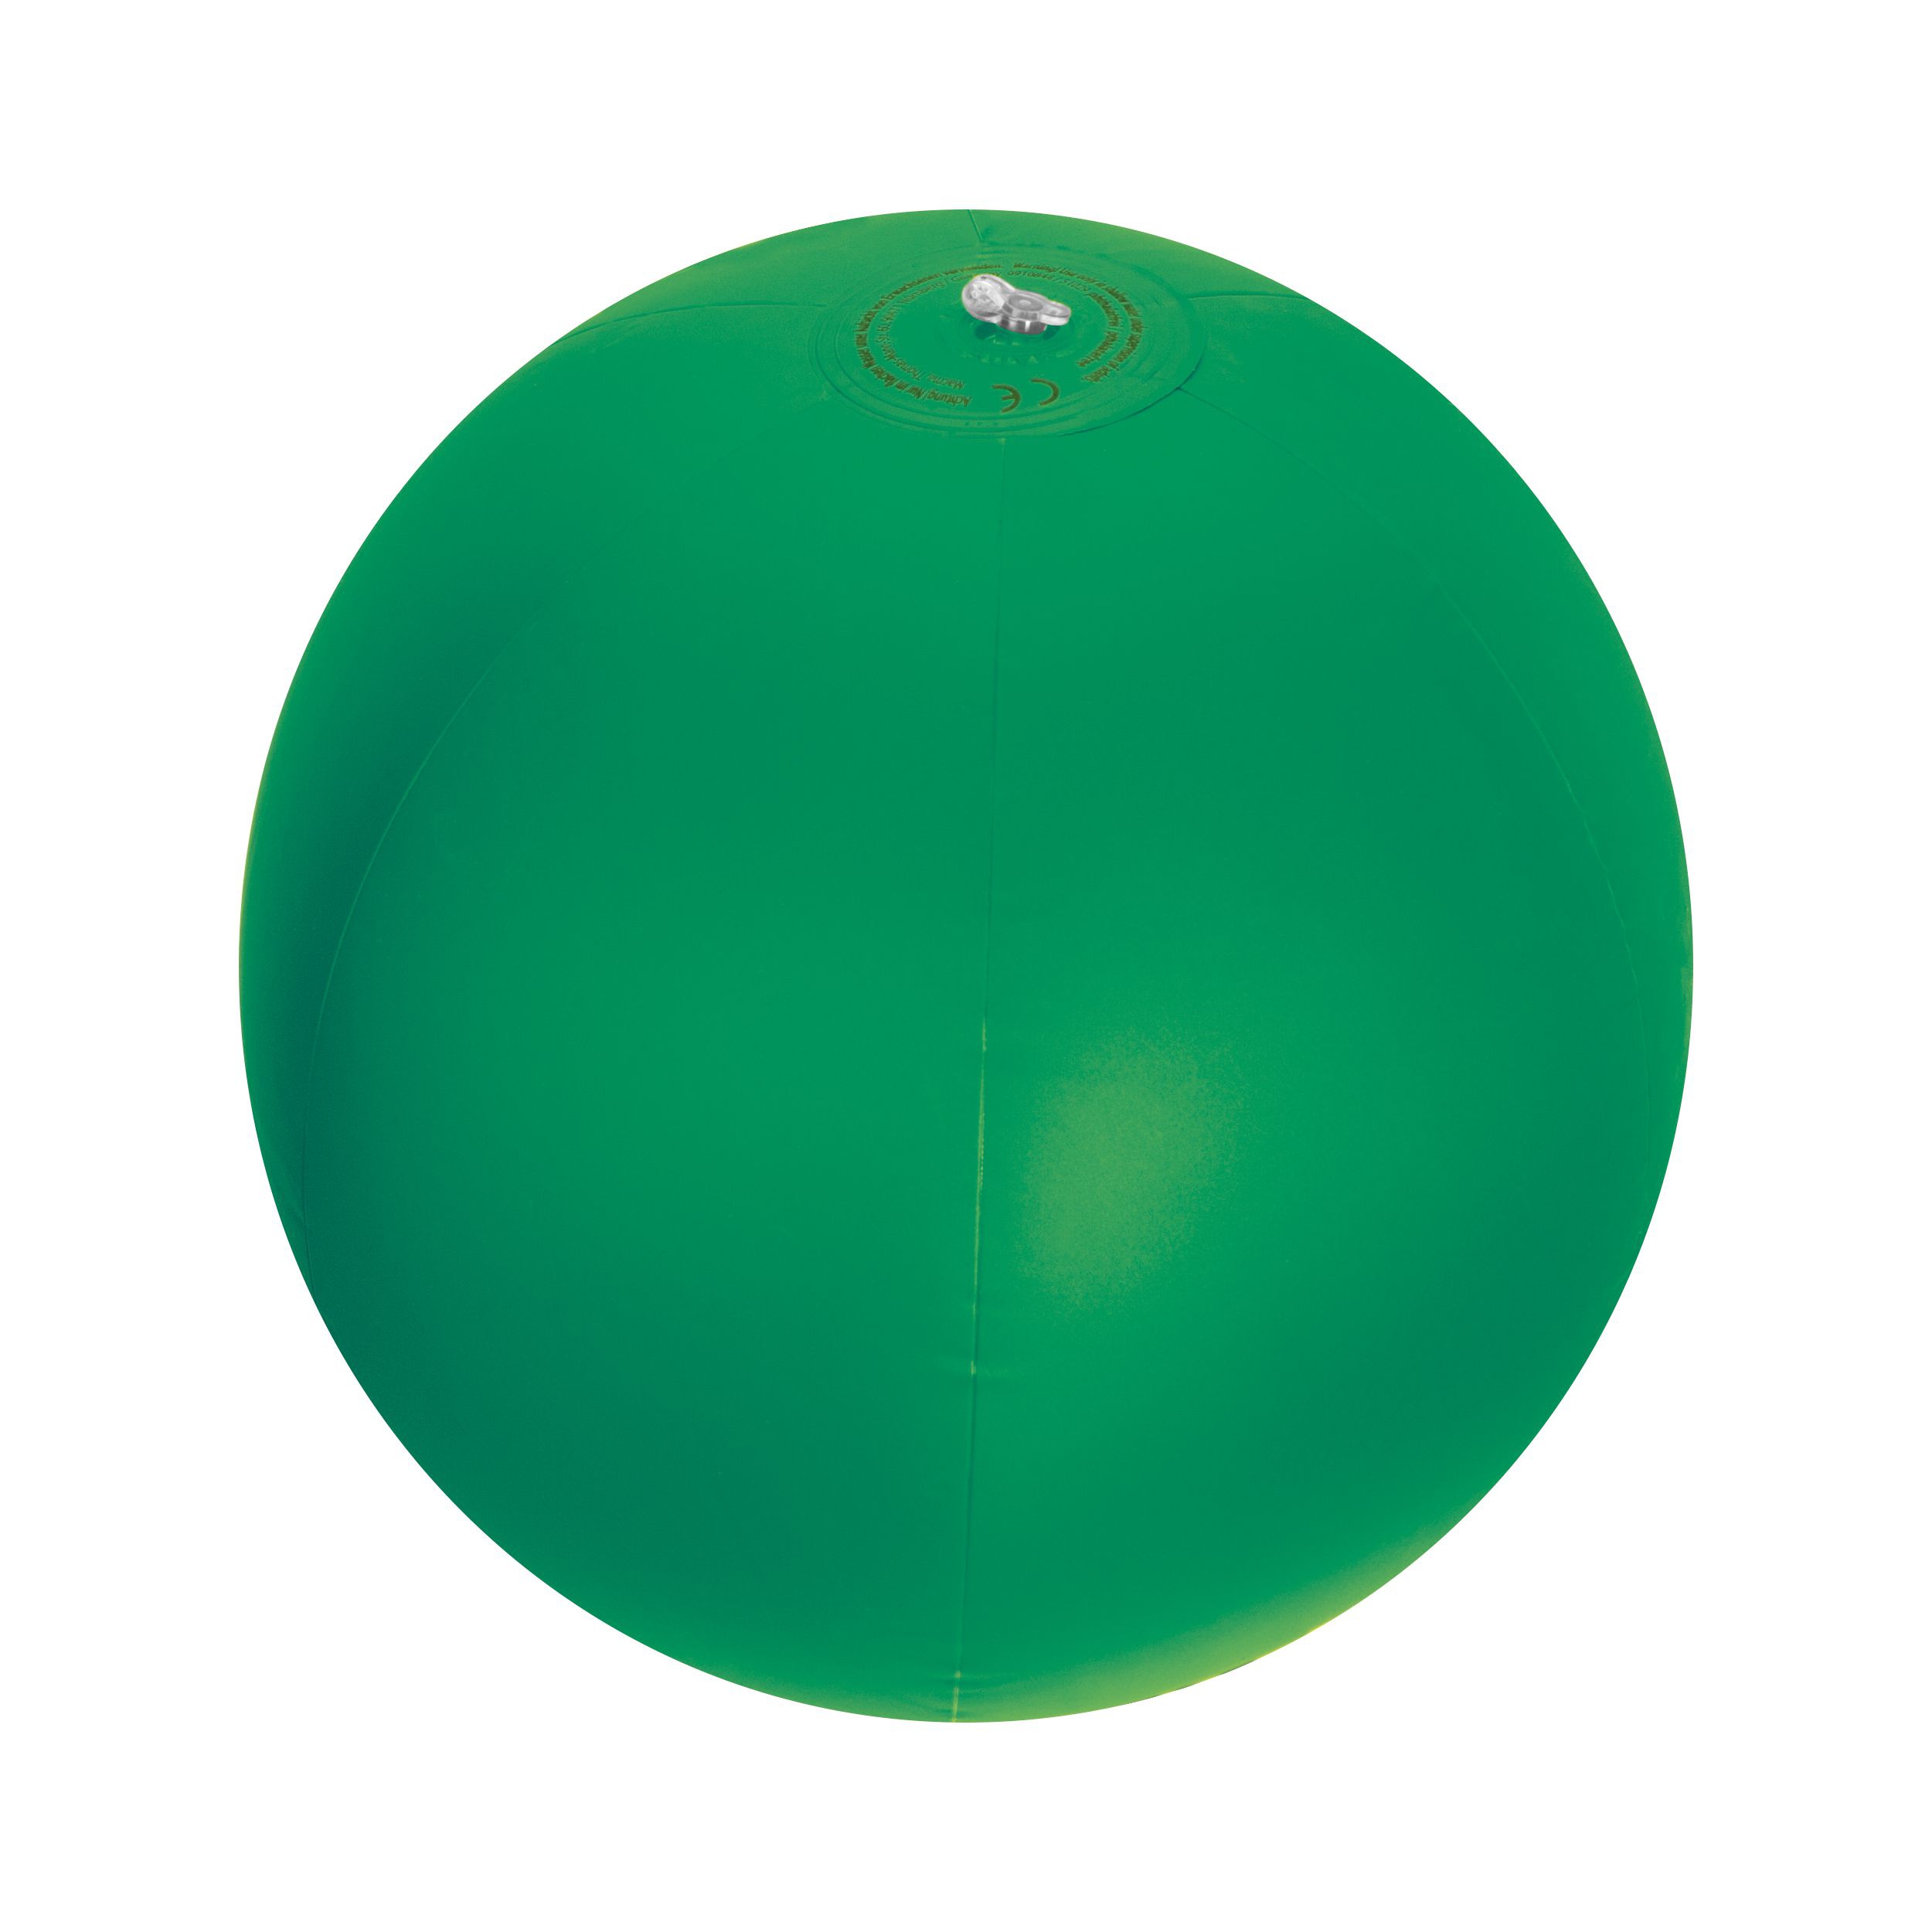 Strandball aus PVC mit einer Segmentlänge von 40 cm, grün